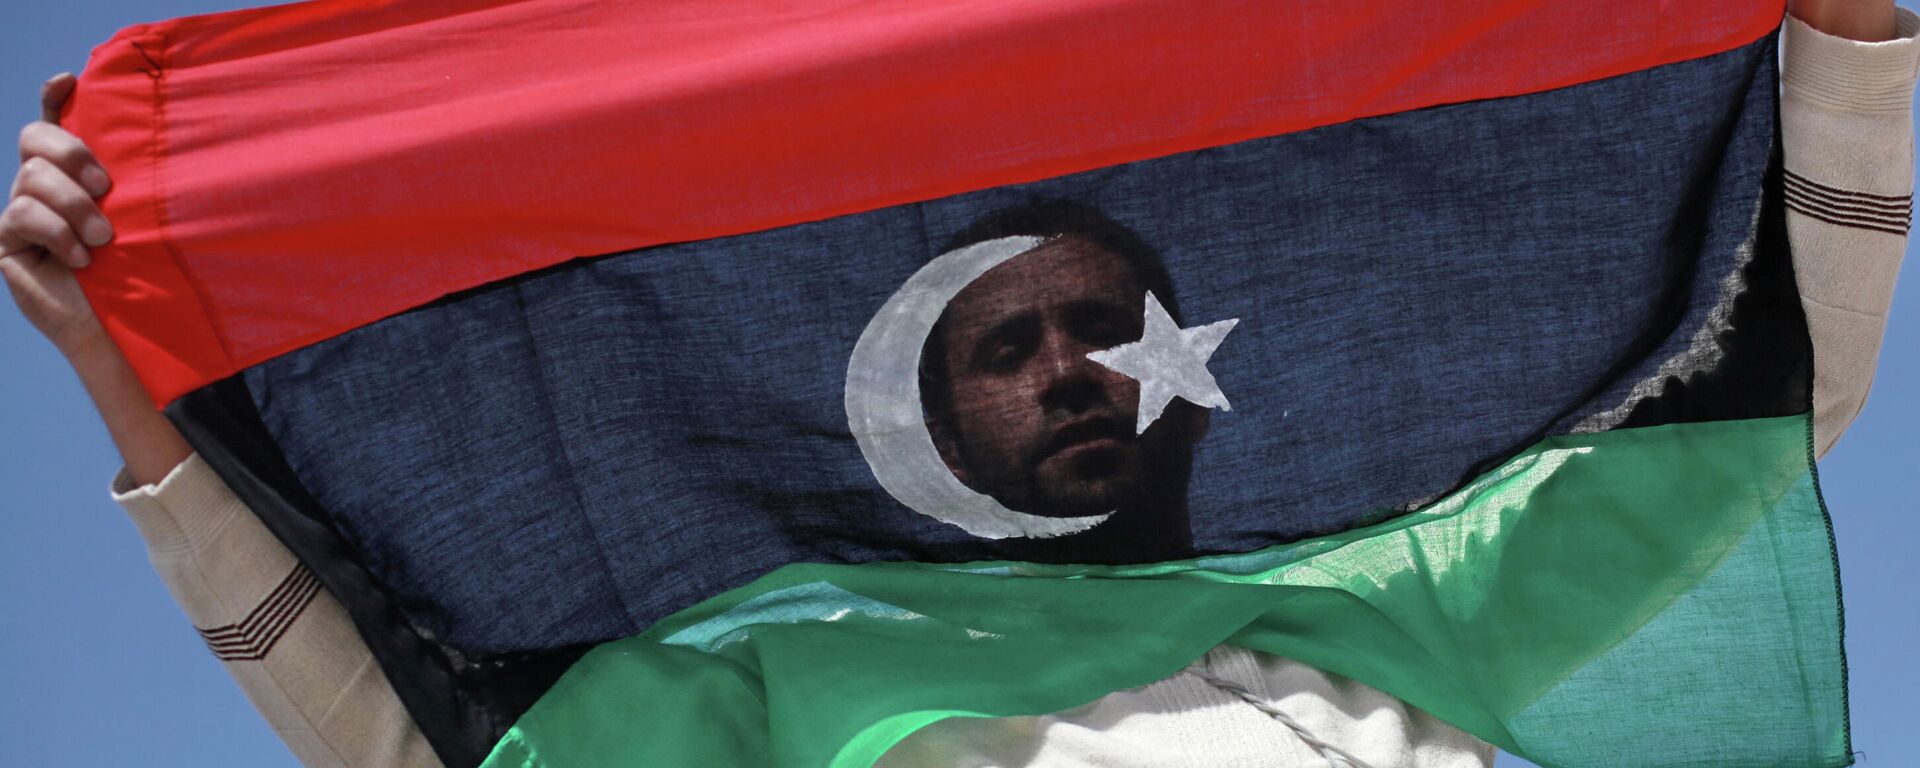 Un opositor con la bandera de Libia - Sputnik Mundo, 1920, 25.10.2021